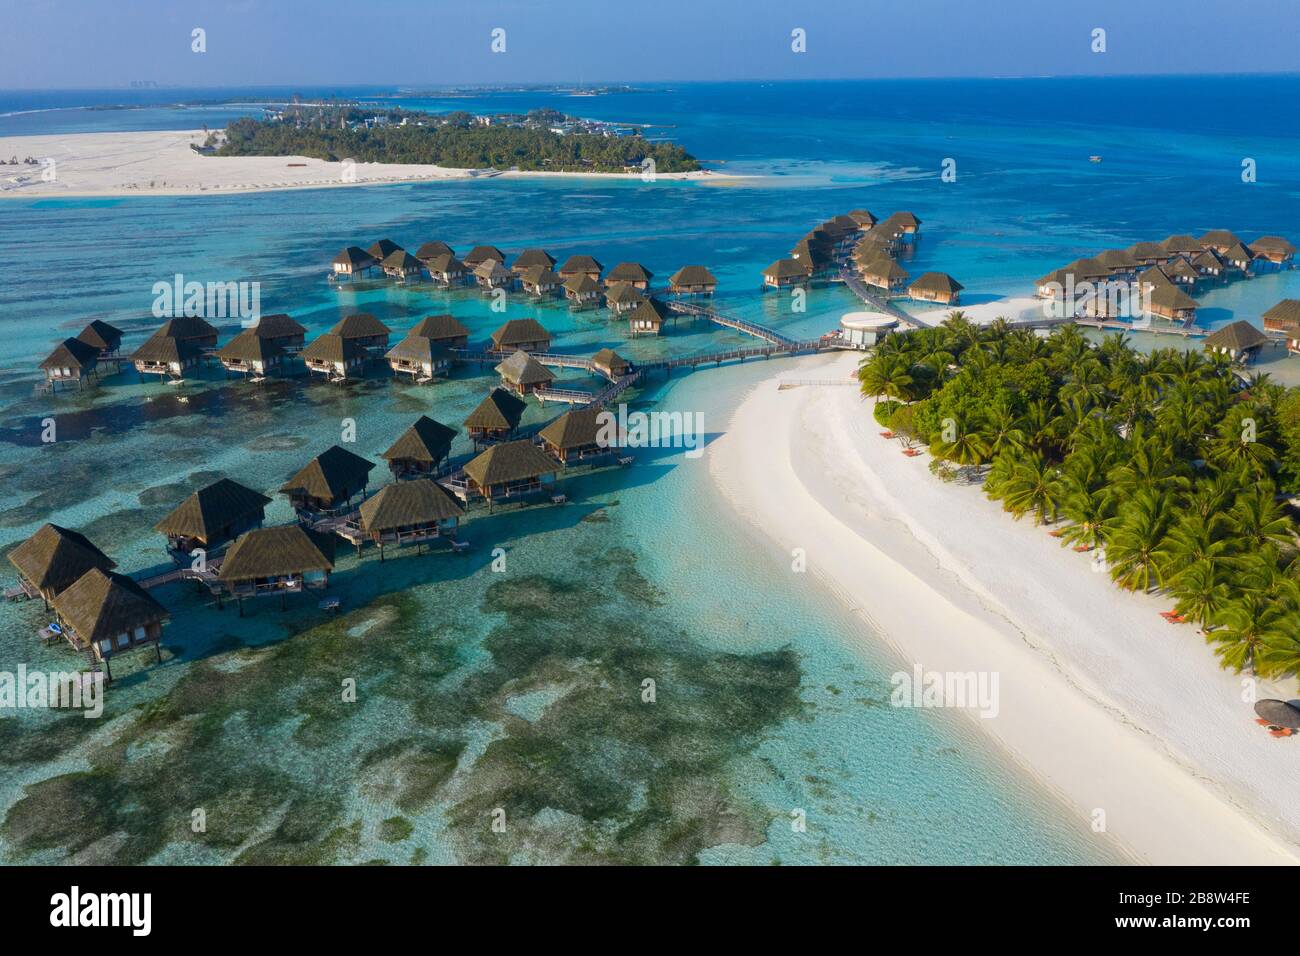 Spiaggia di sabbia di isola tropicale nelle Maldive Foto Stock